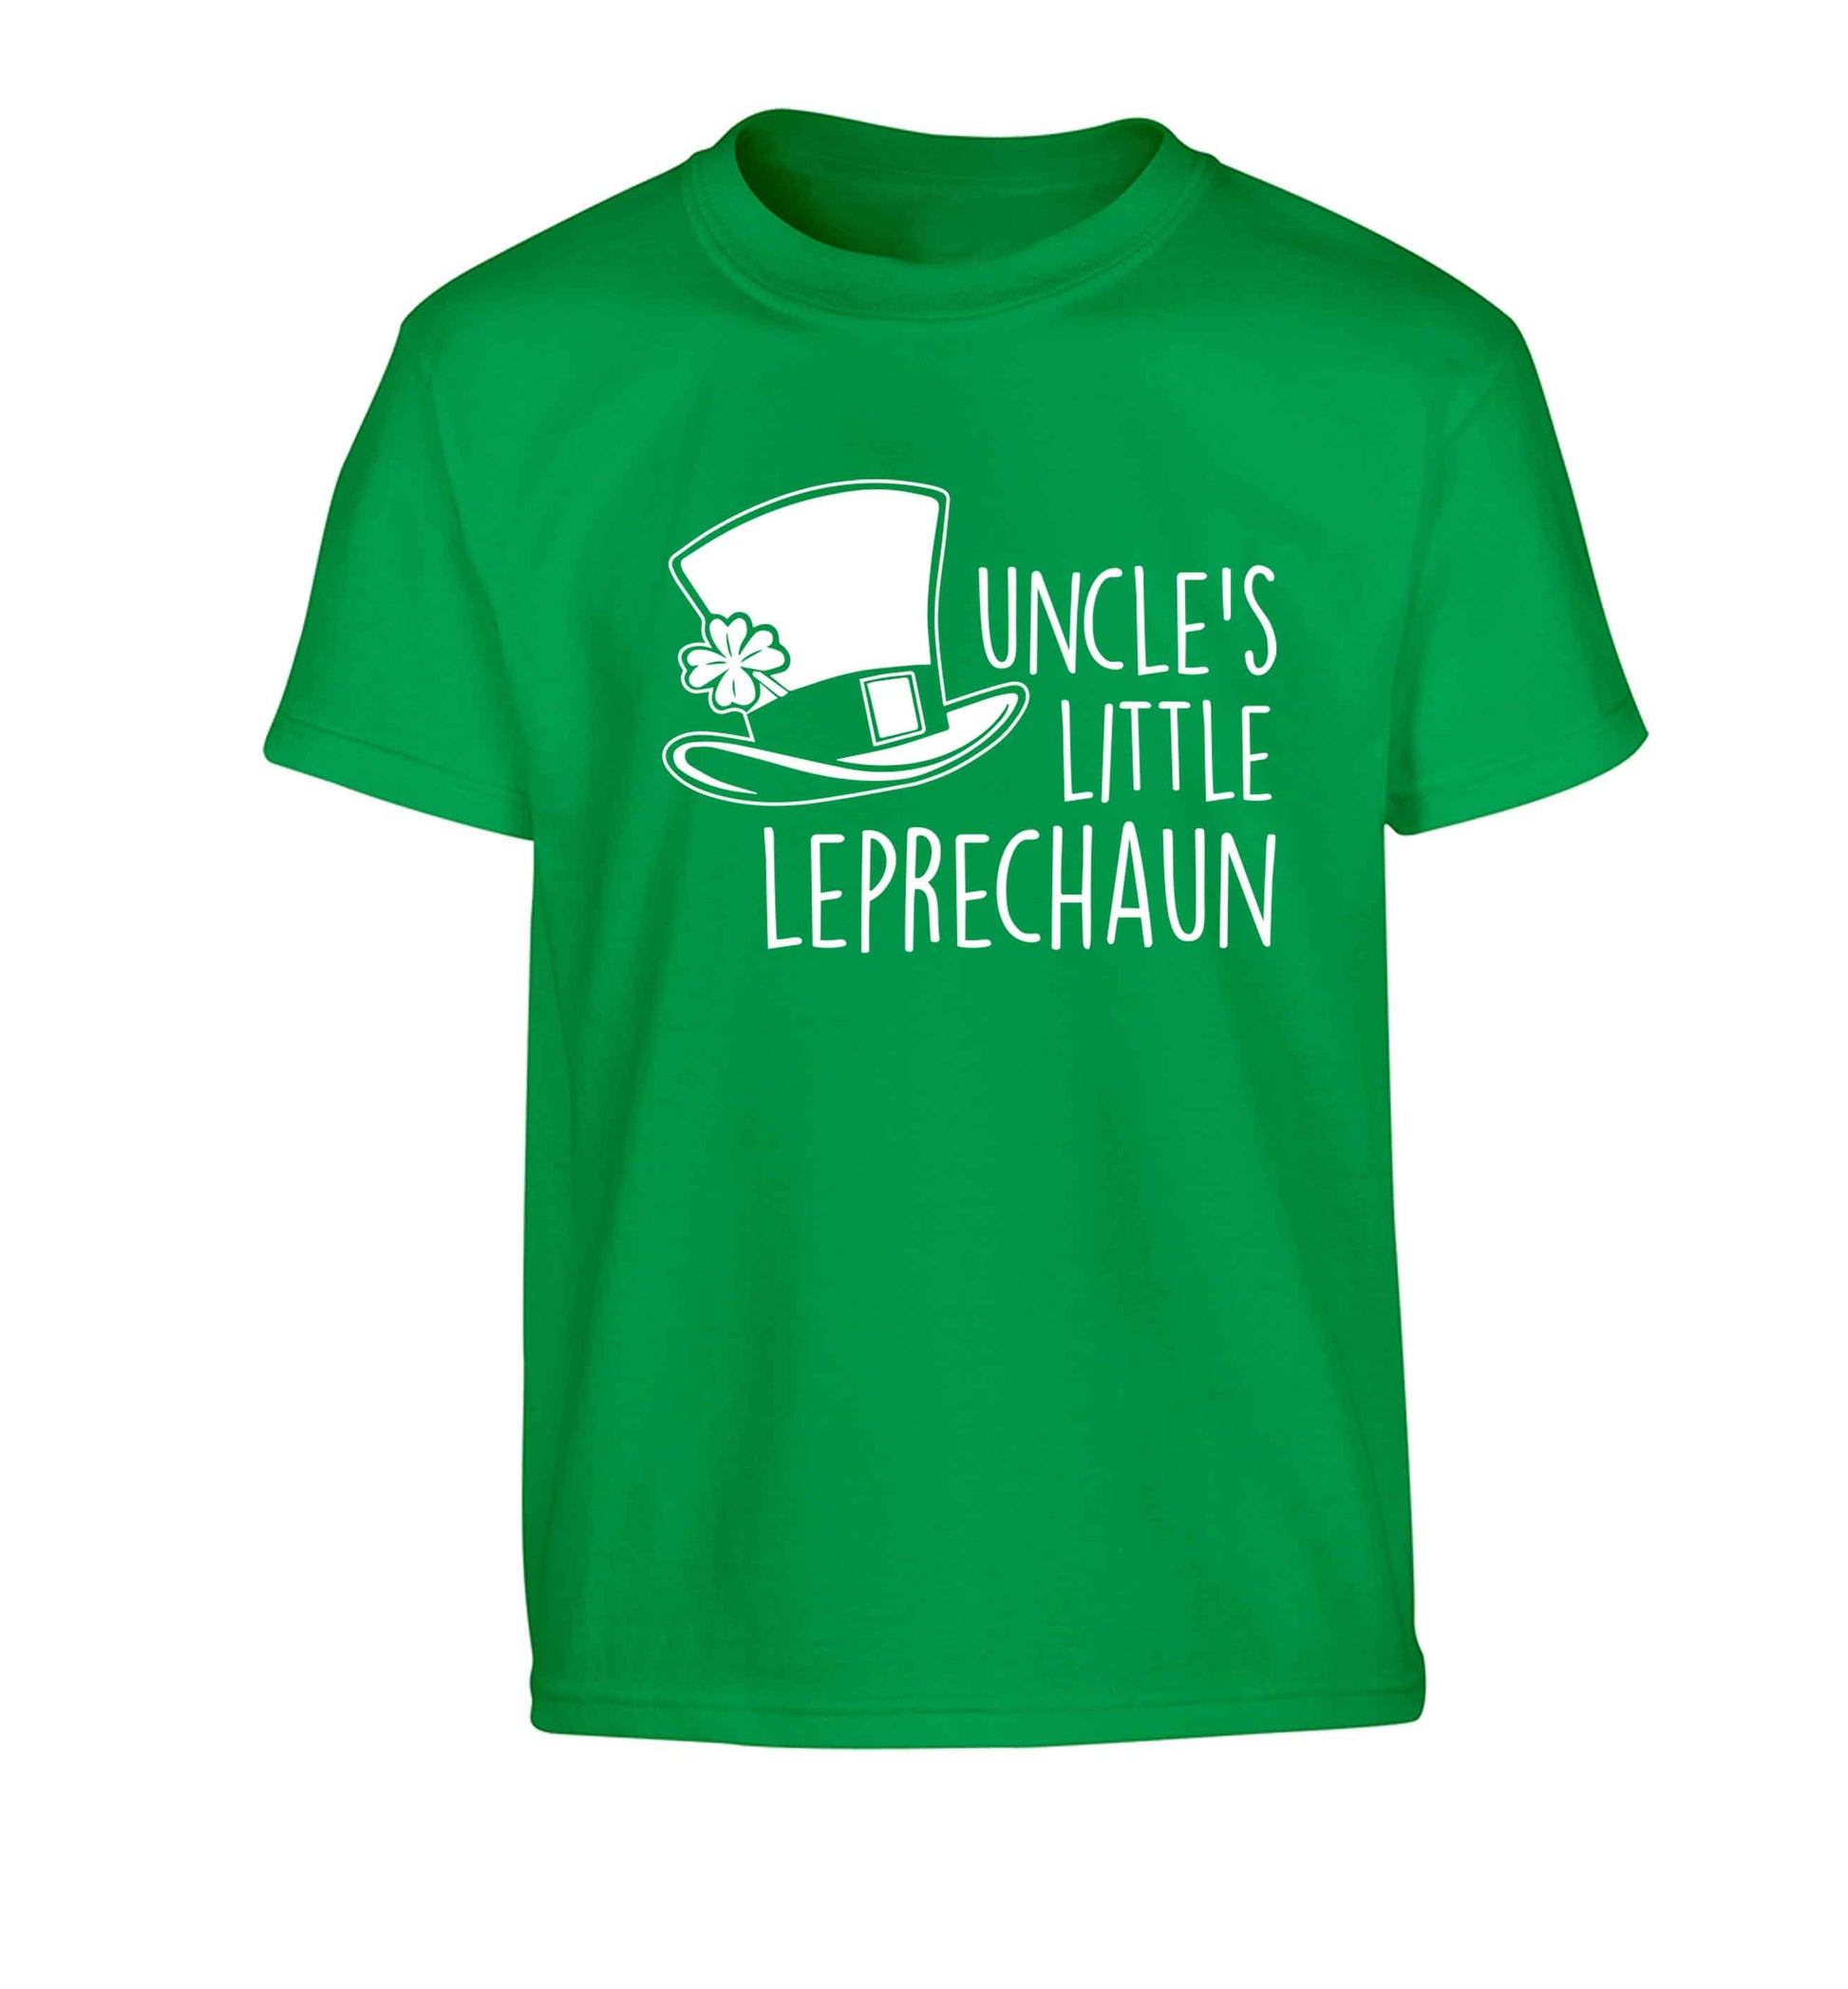 Uncles little leprechaun Children's green Tshirt 12-13 Years